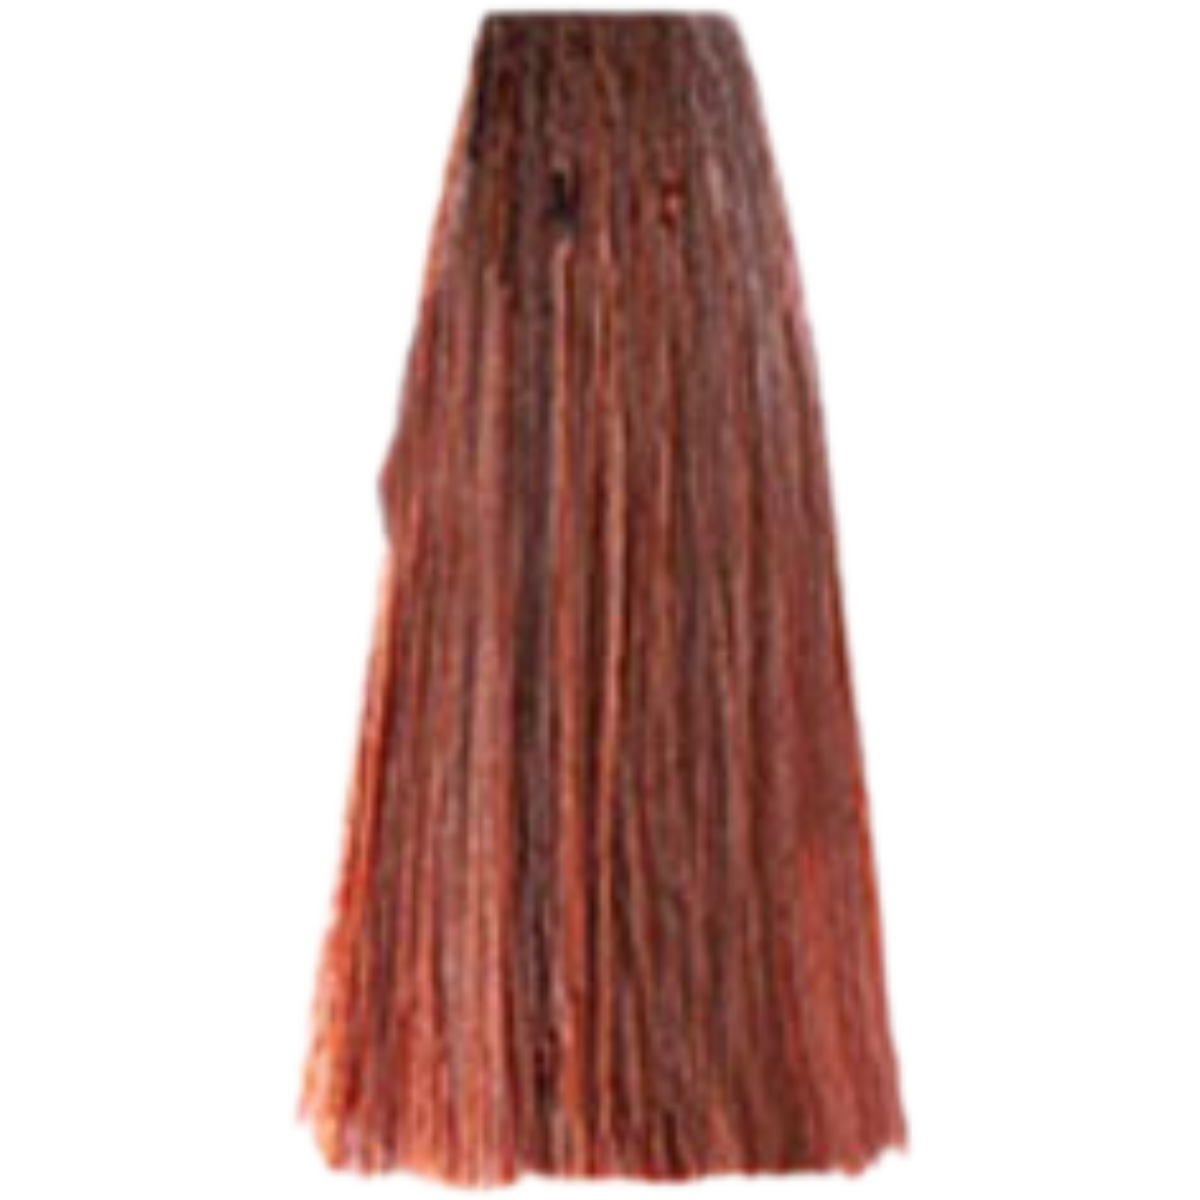 צבע שיער 7.45 COPPER MAHOGANY BLONDE פארמויטה FarmaVita צבע לשיער 100 גרם